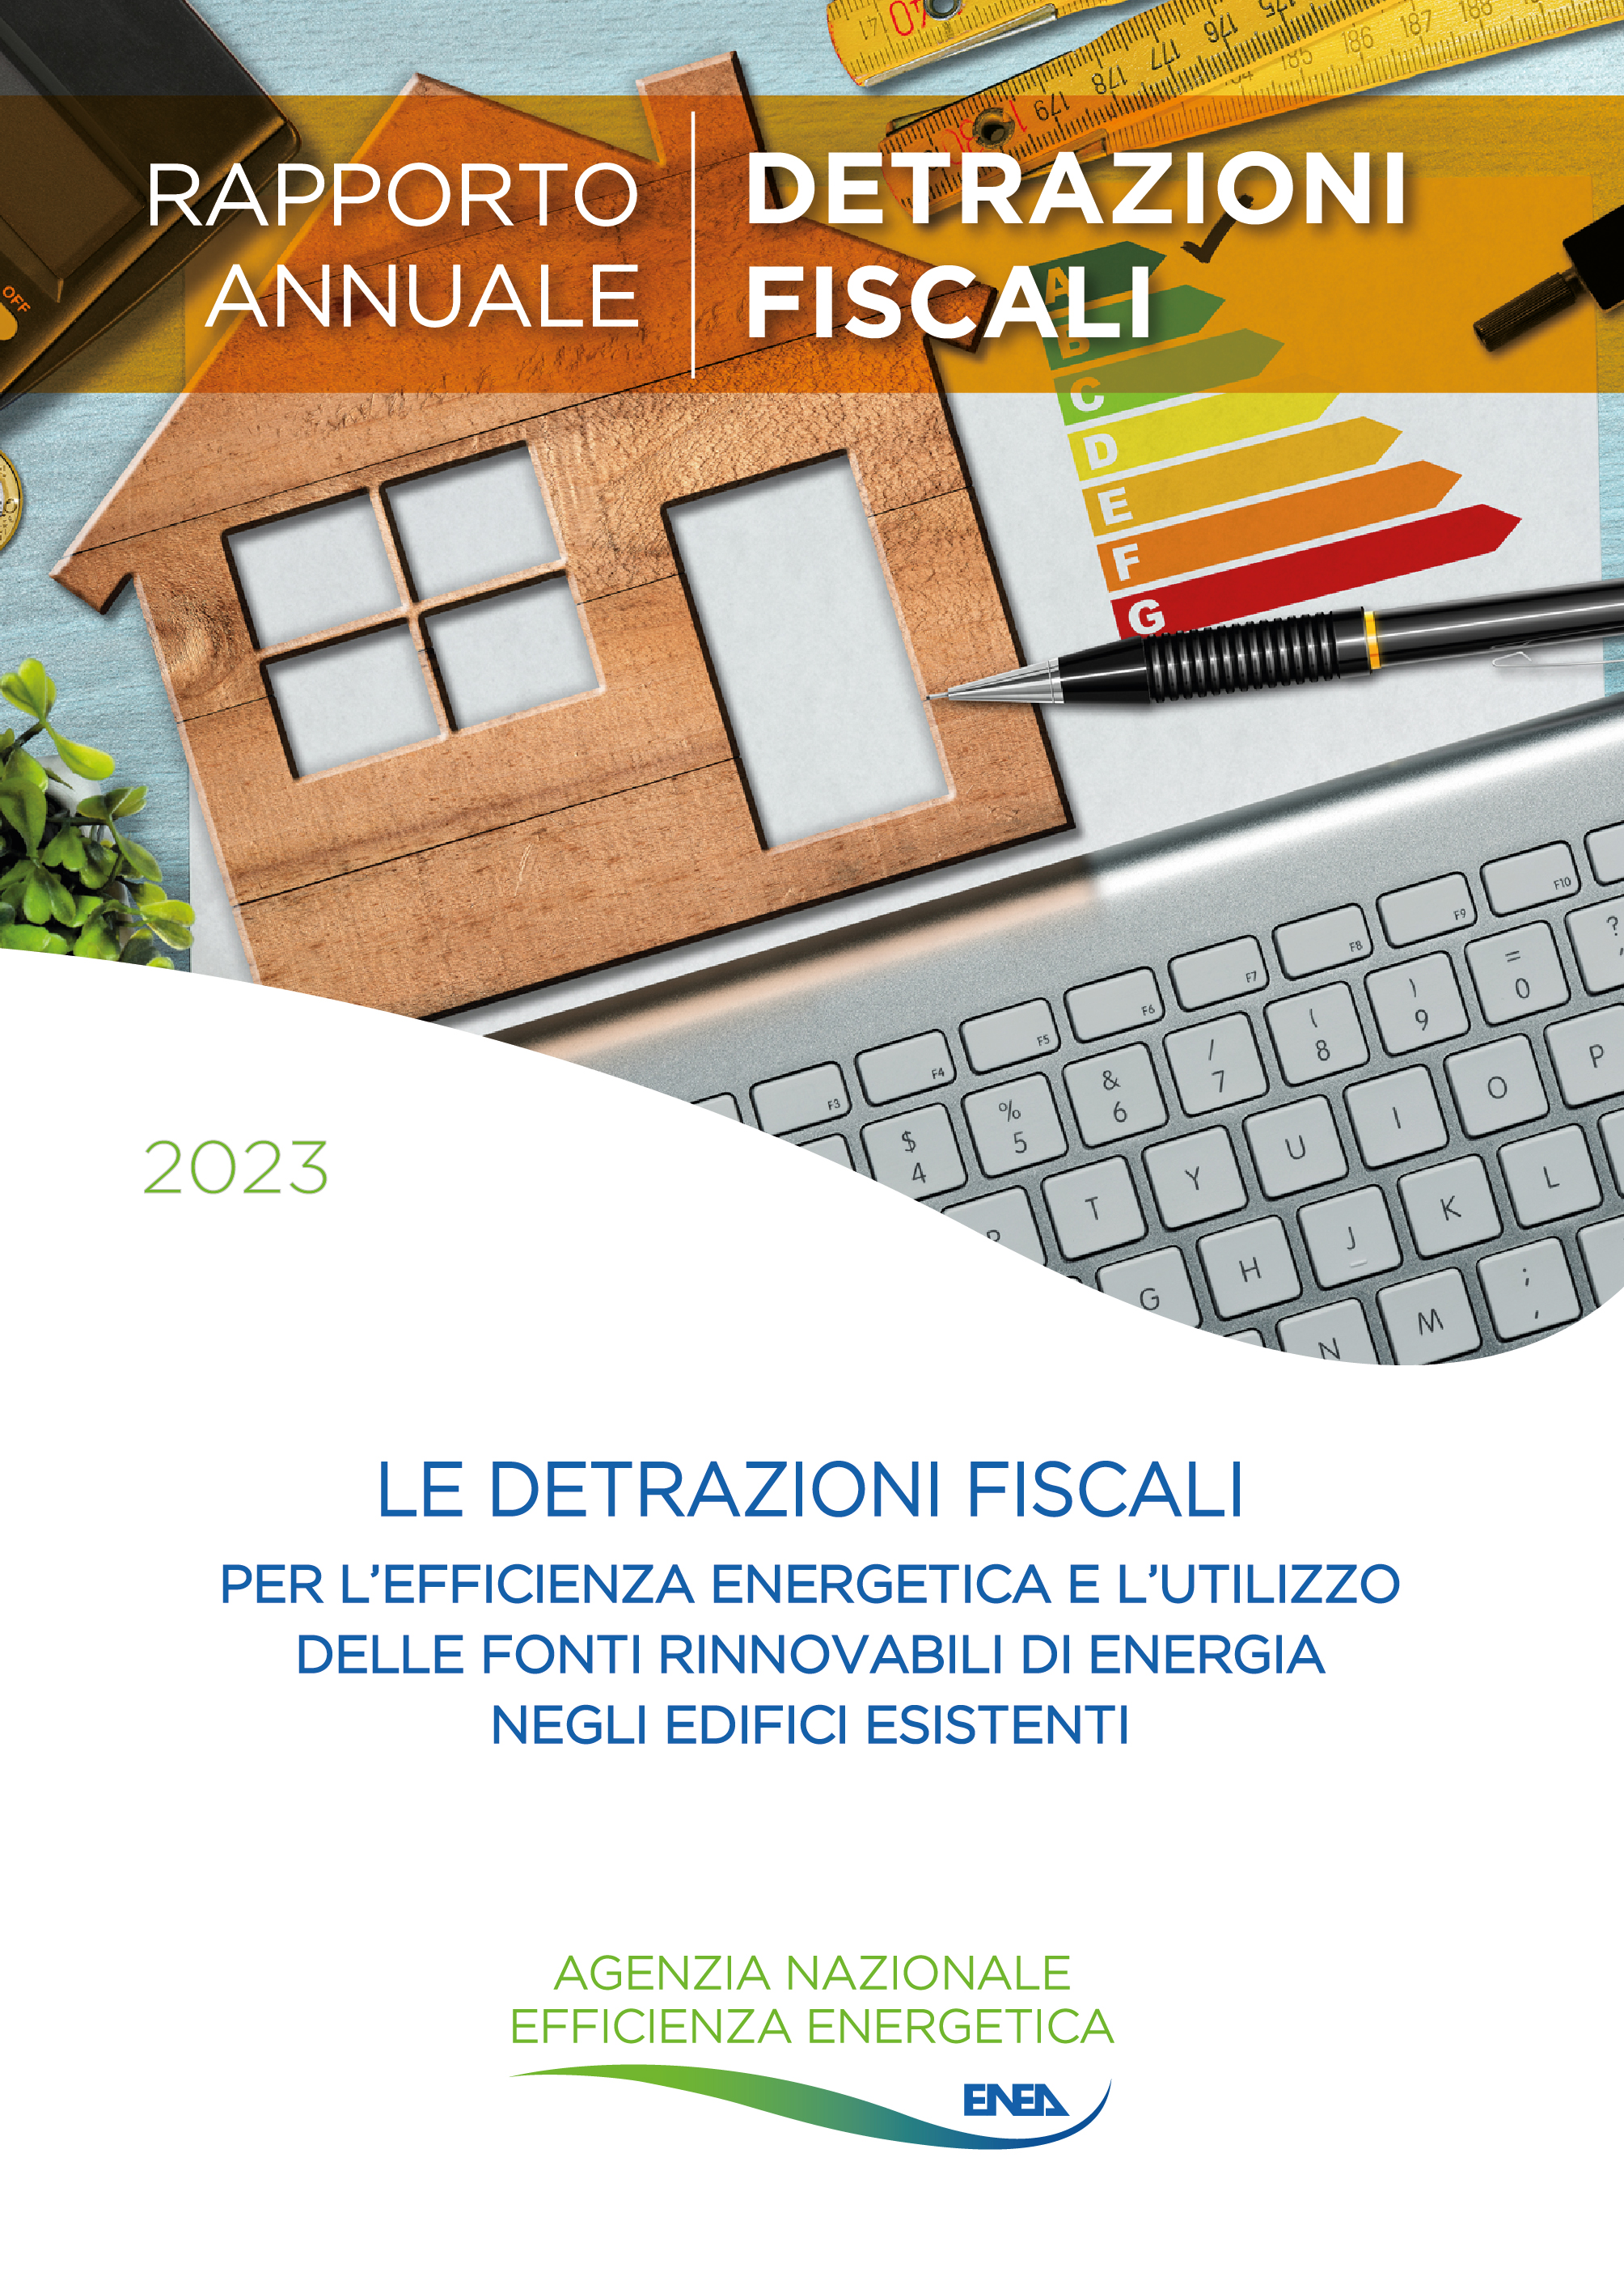 La copertina del Rapporto annuale sulle detrazioni fiscali per l’efficienza energetica e l’utilizzo delle fonti rinnovabili di energia negli edifici esistenti con in basso il logo di ENEA - Agenzia Nazionale per l'Efficienza Energetica 